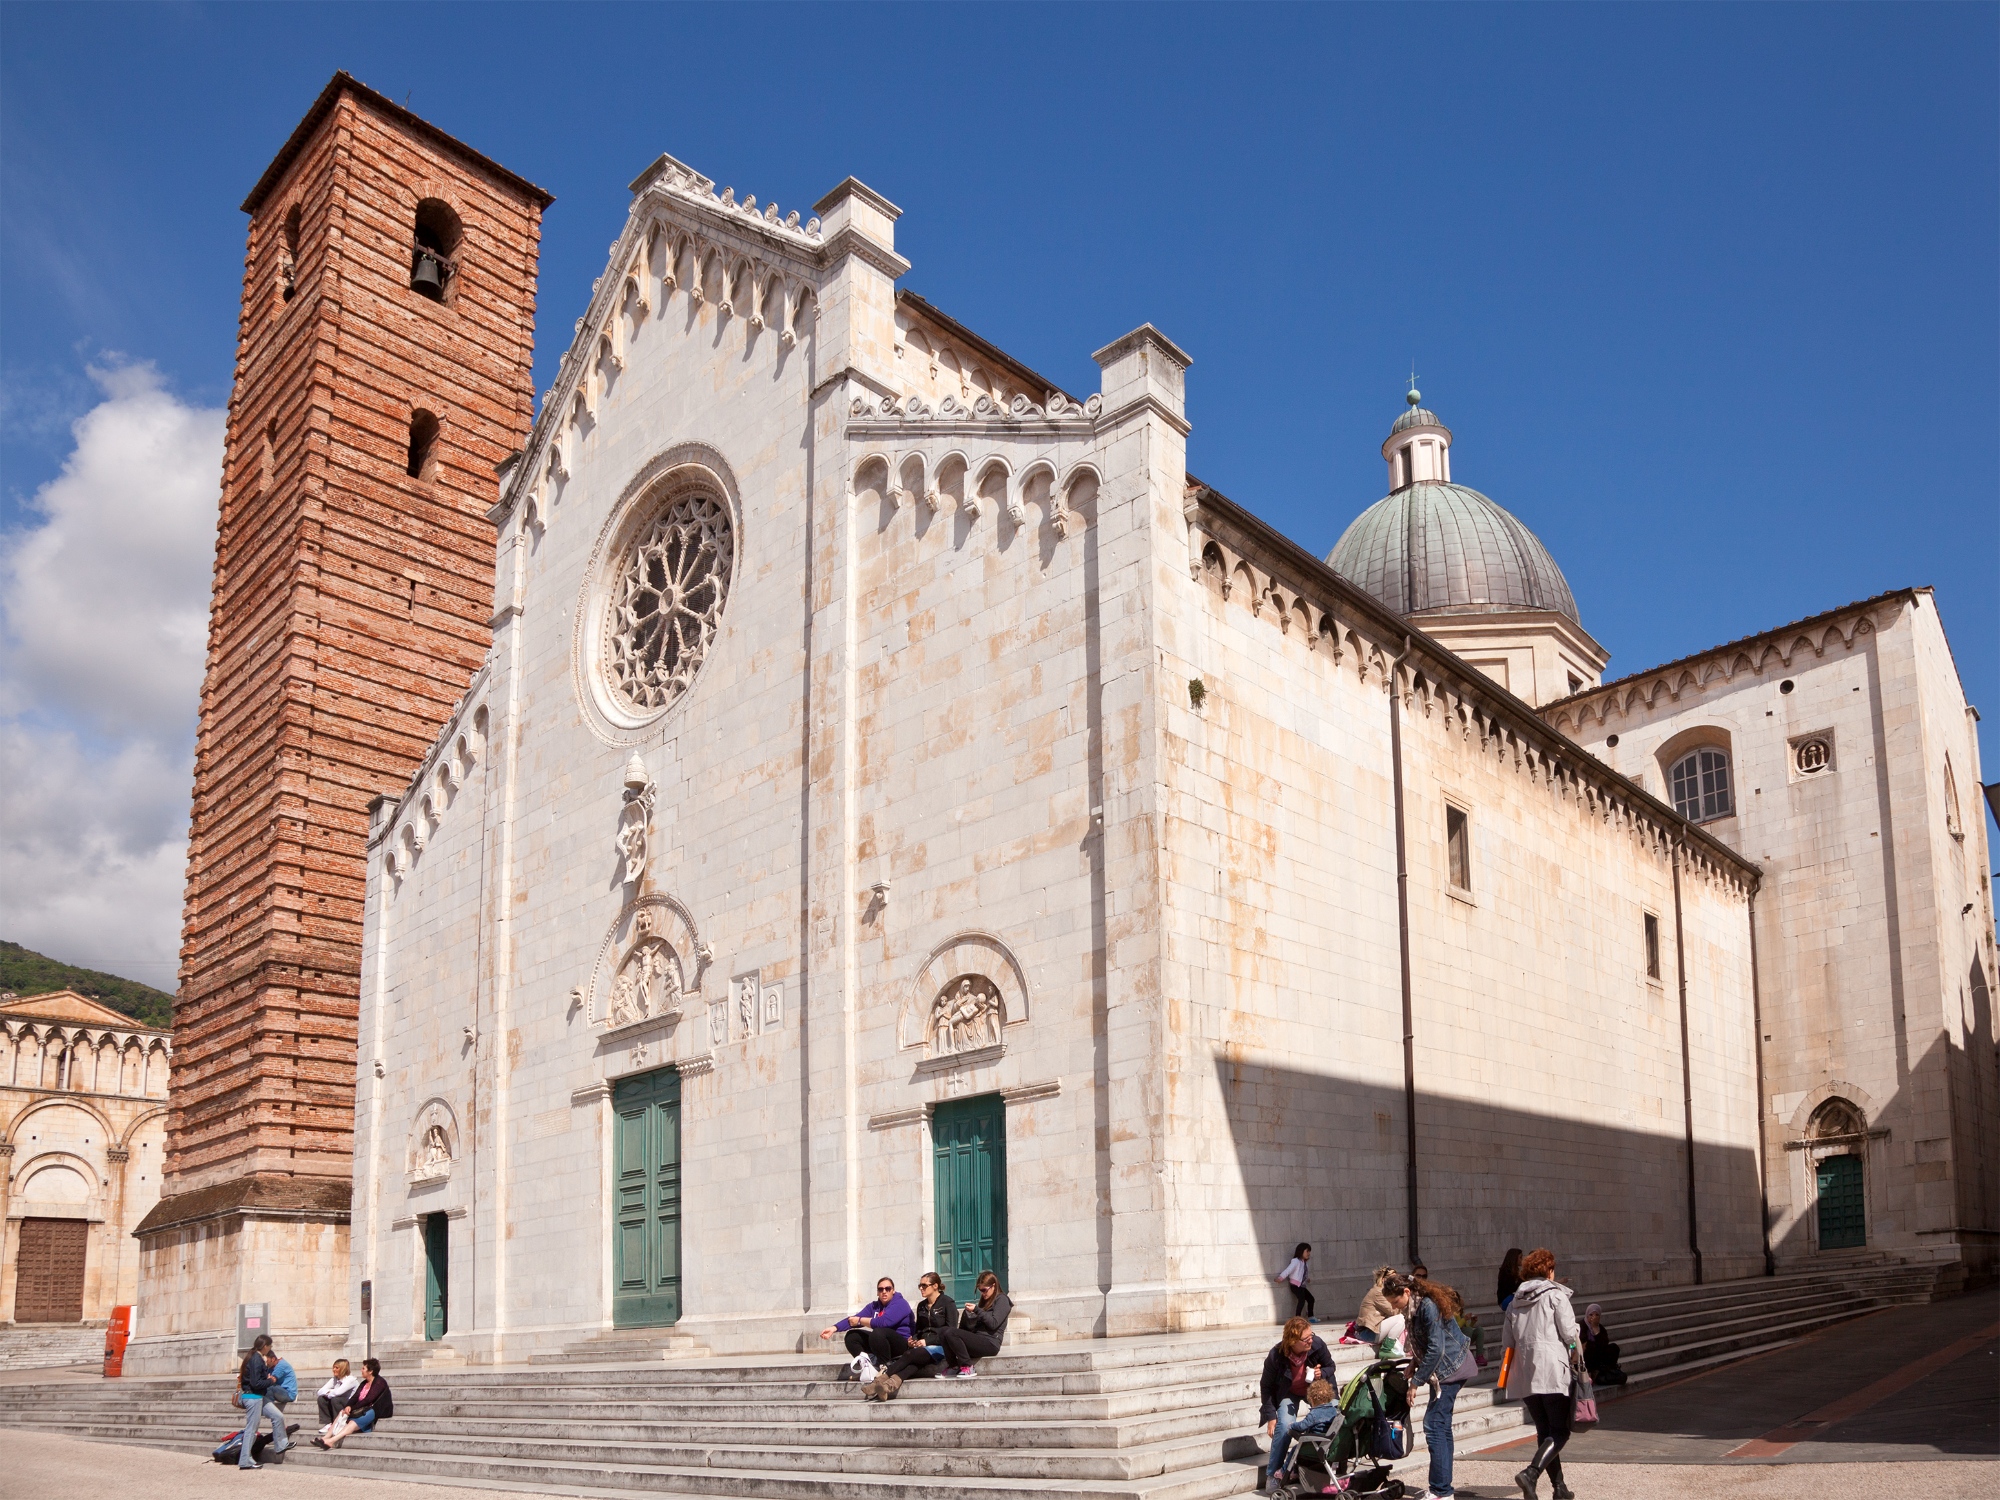 Pietrasanta Duomo